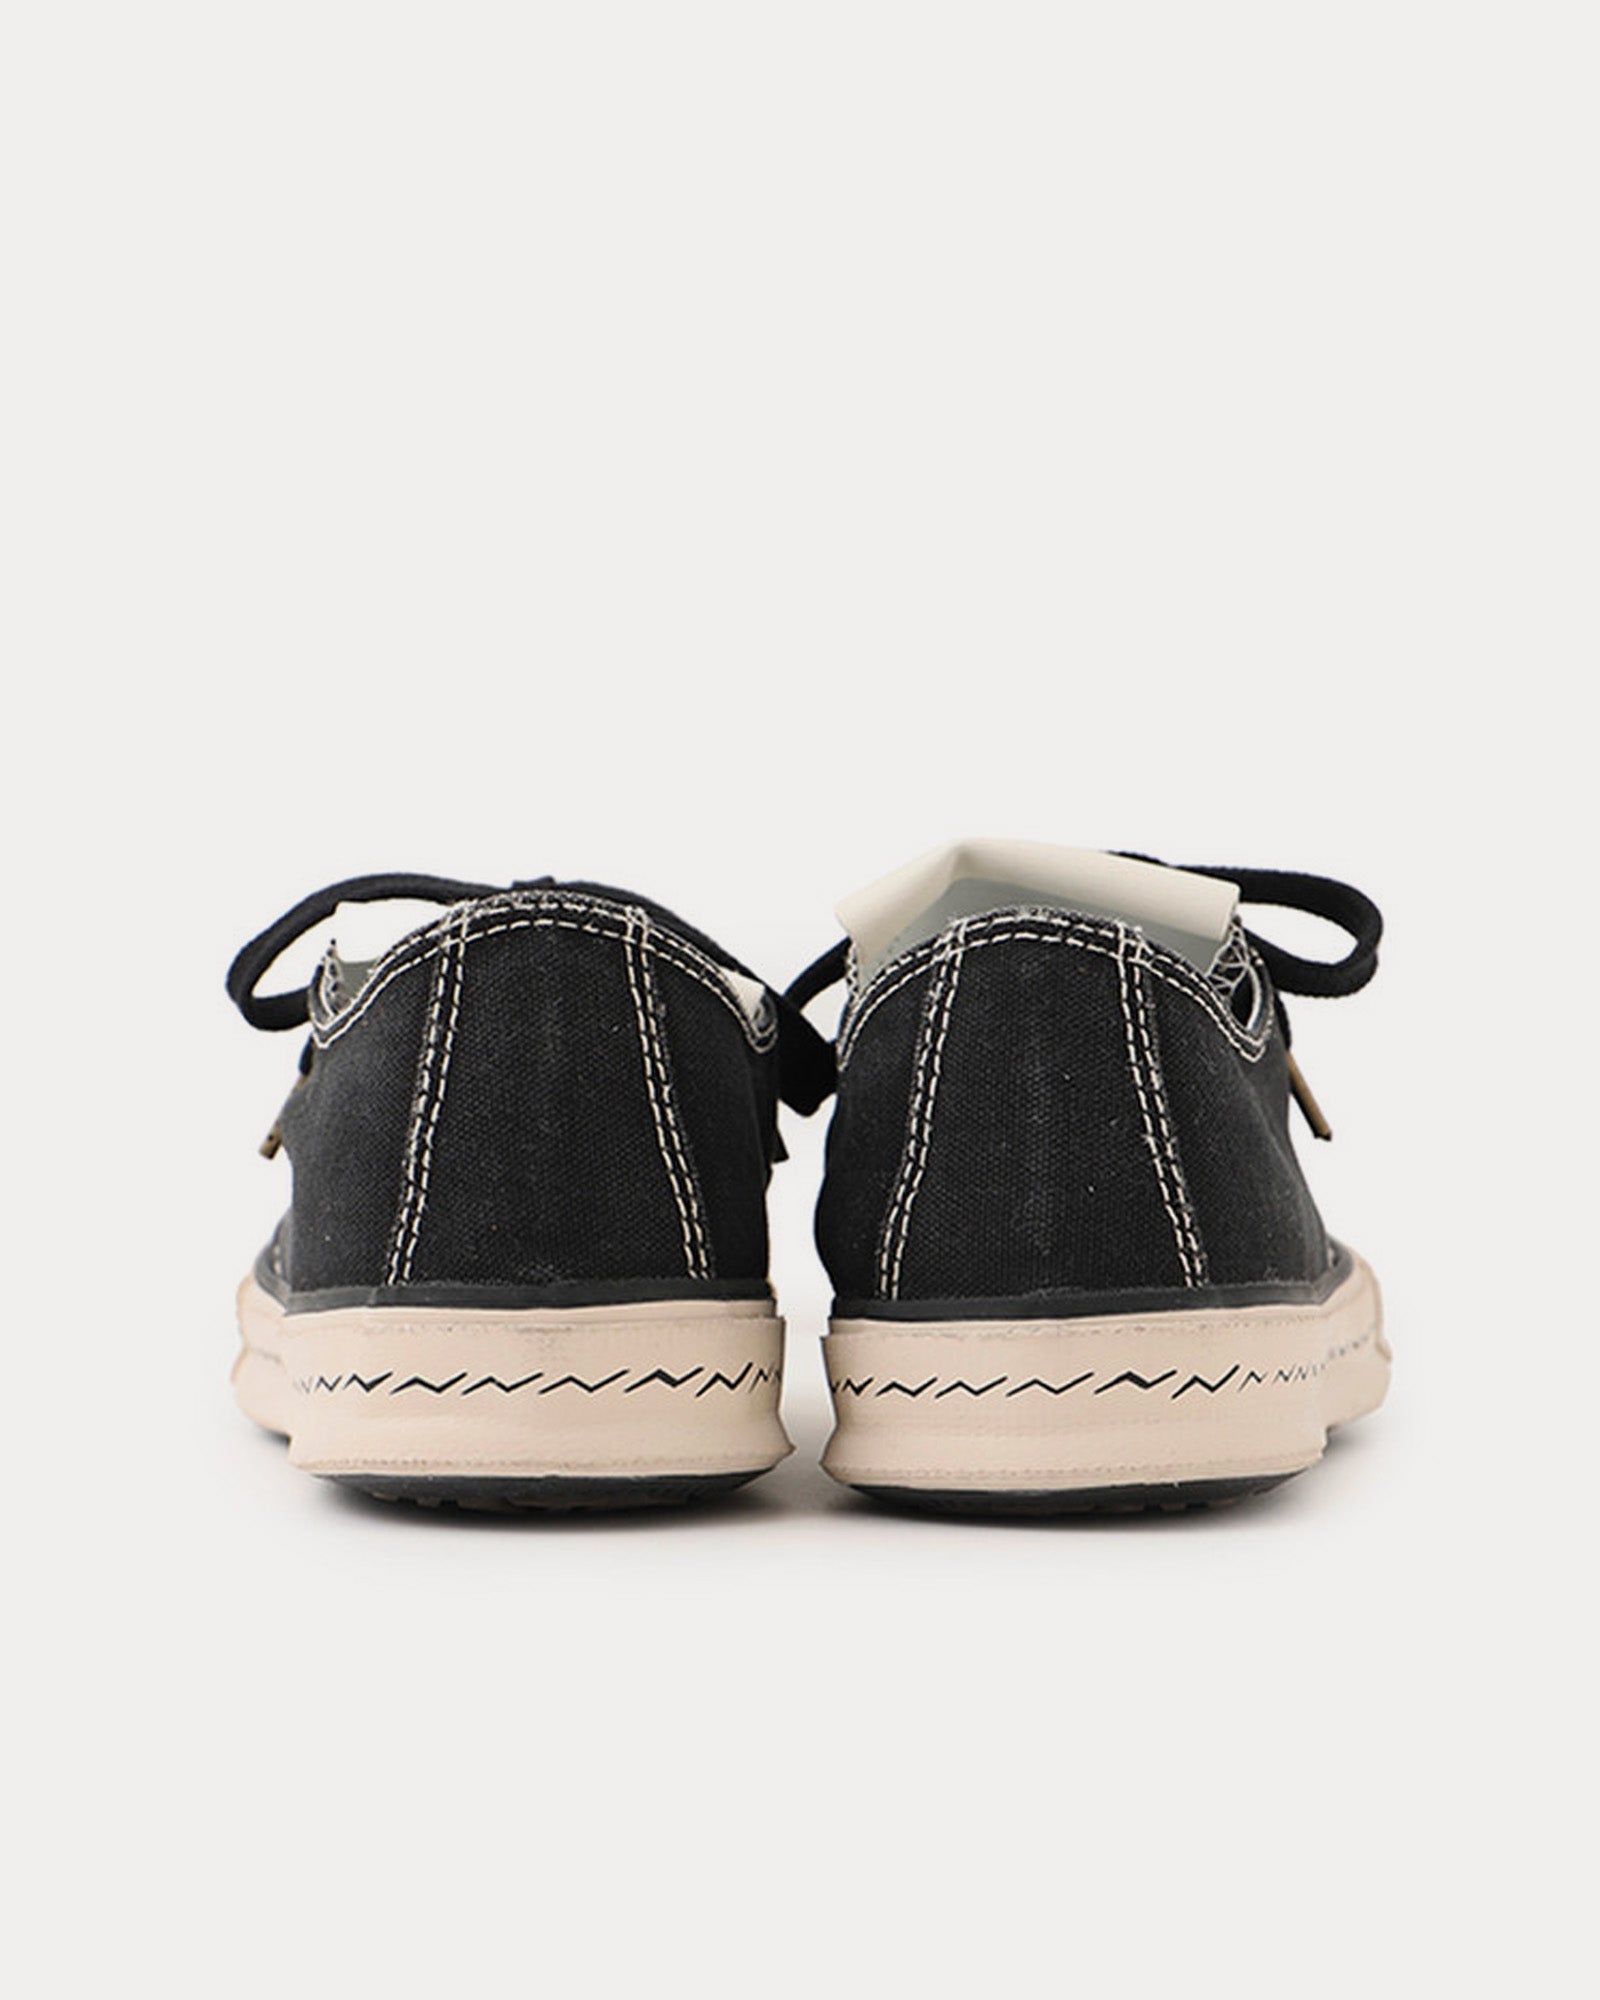 Visvim - Skagway Lo Canvas Black Low Top Sneakers